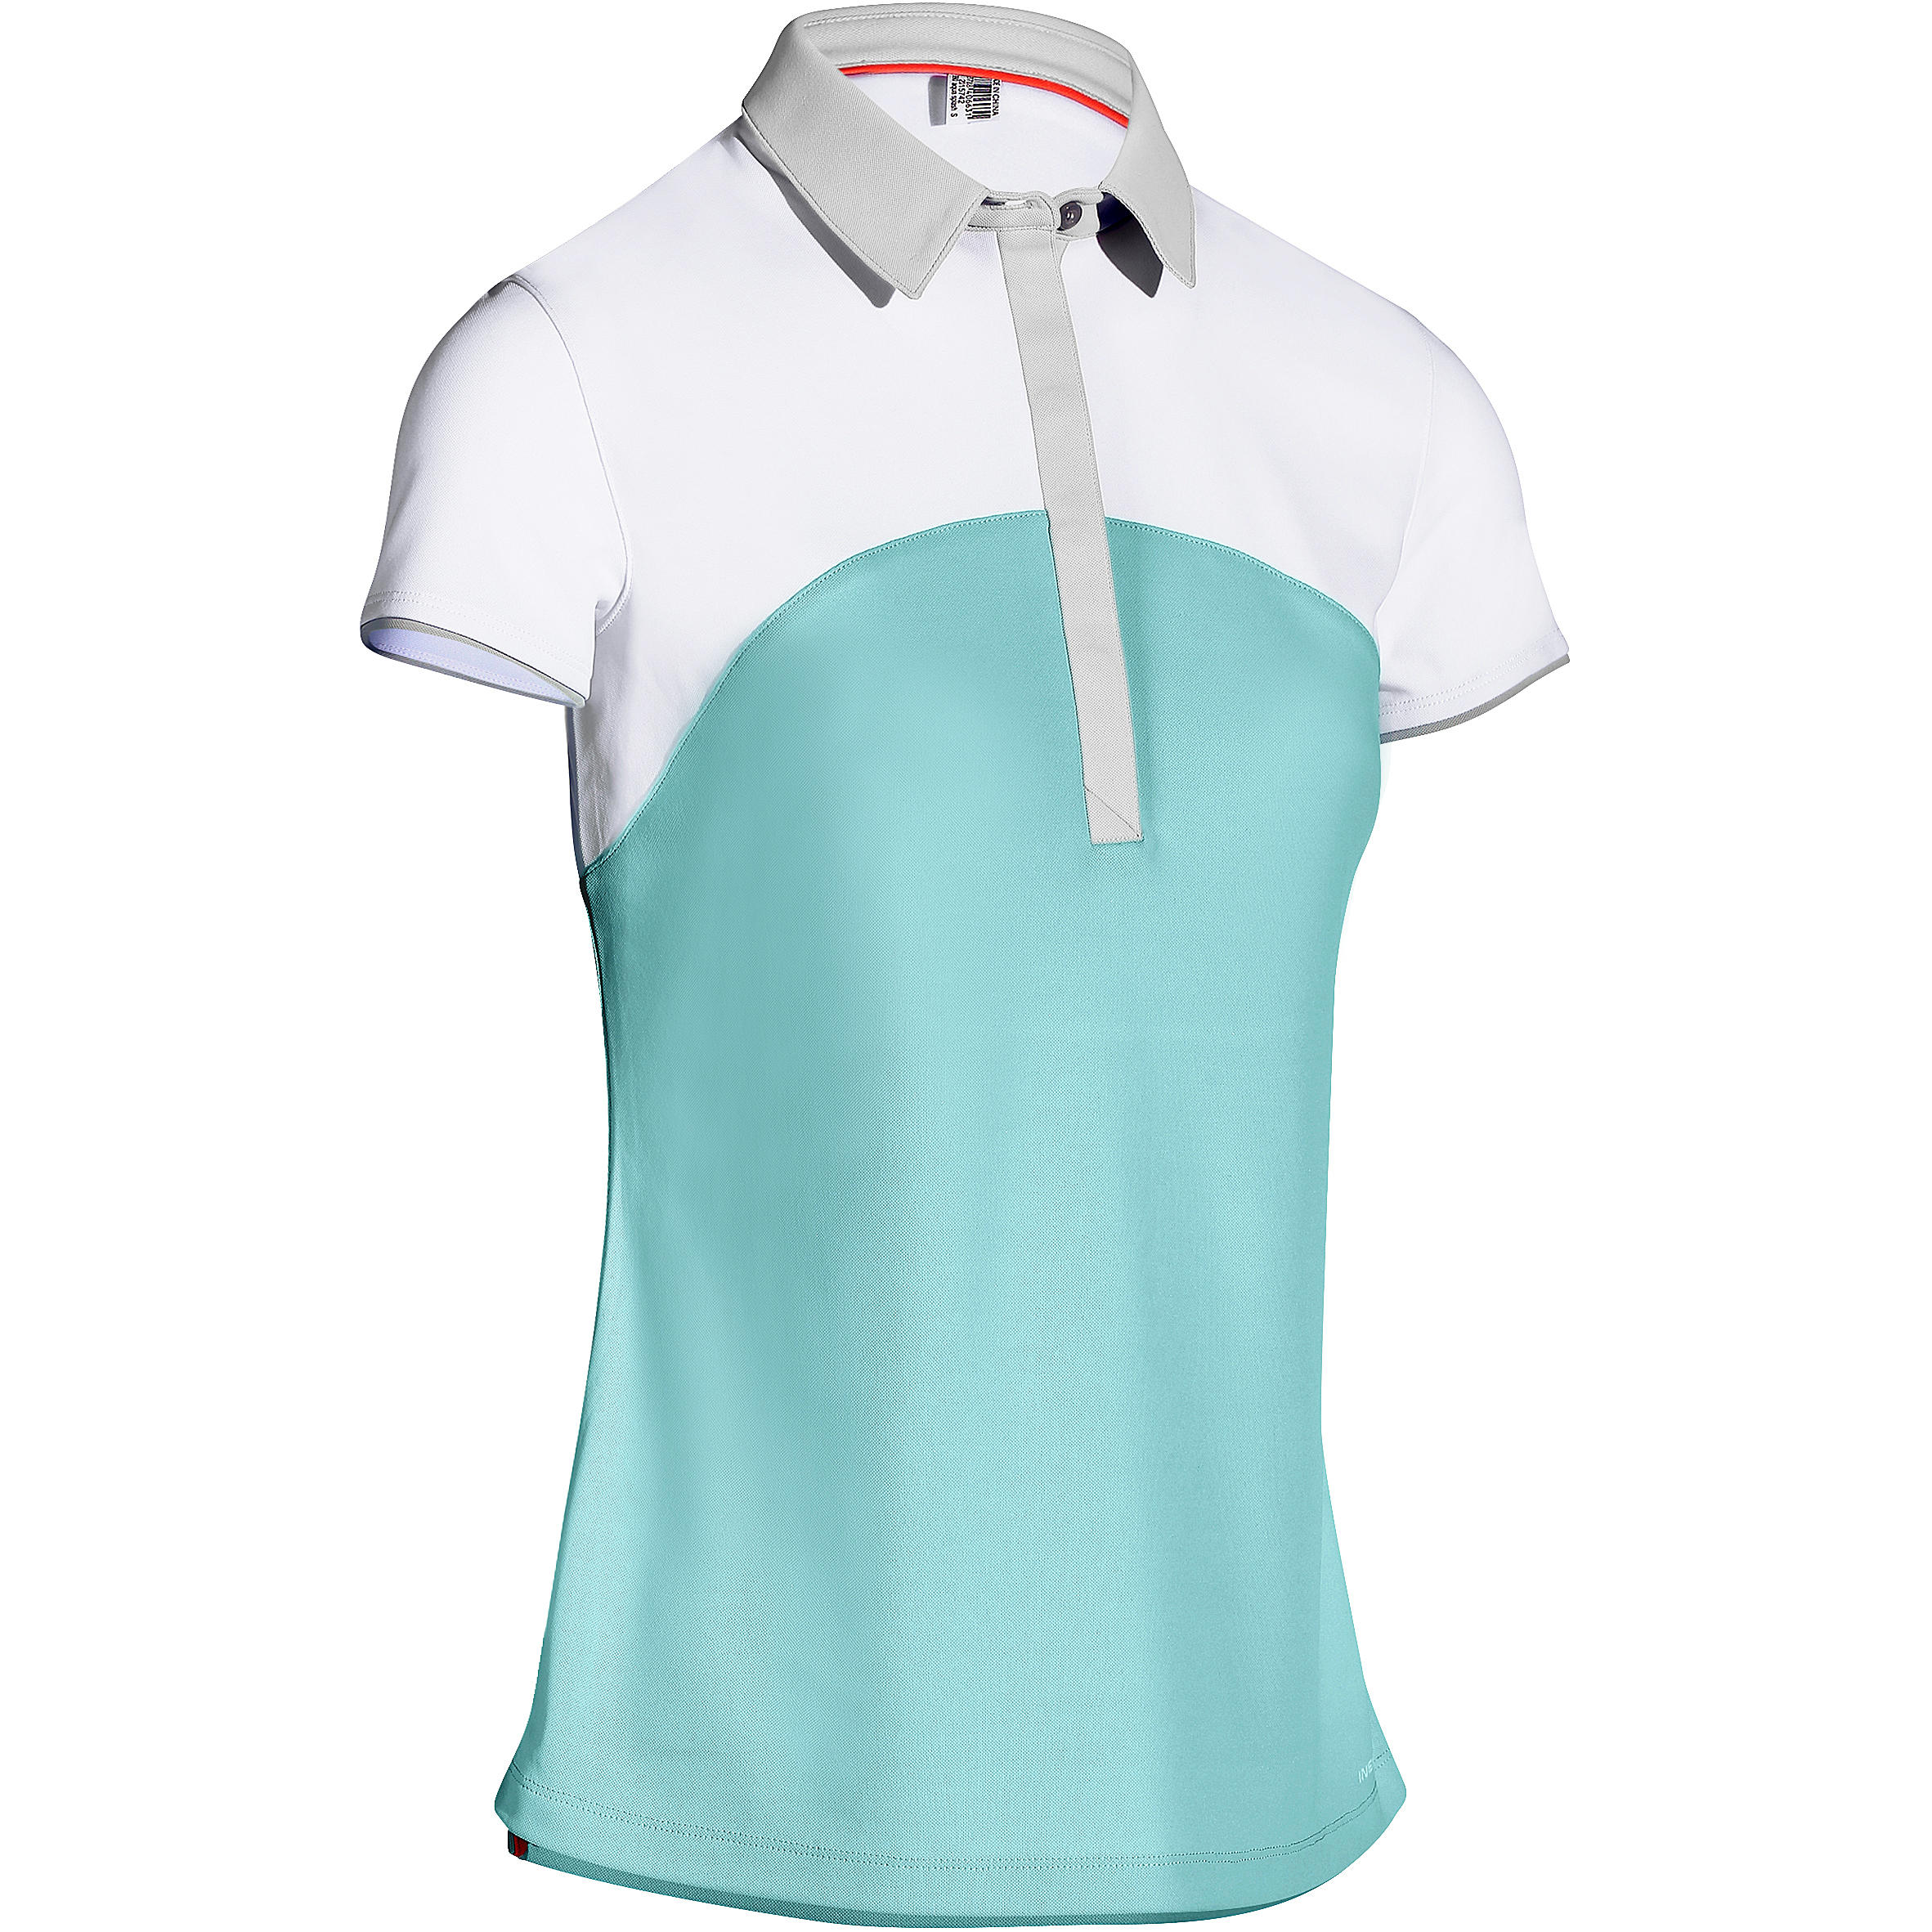 INESIS Women's Golf Polo 900 - Blue Lagoon / White 